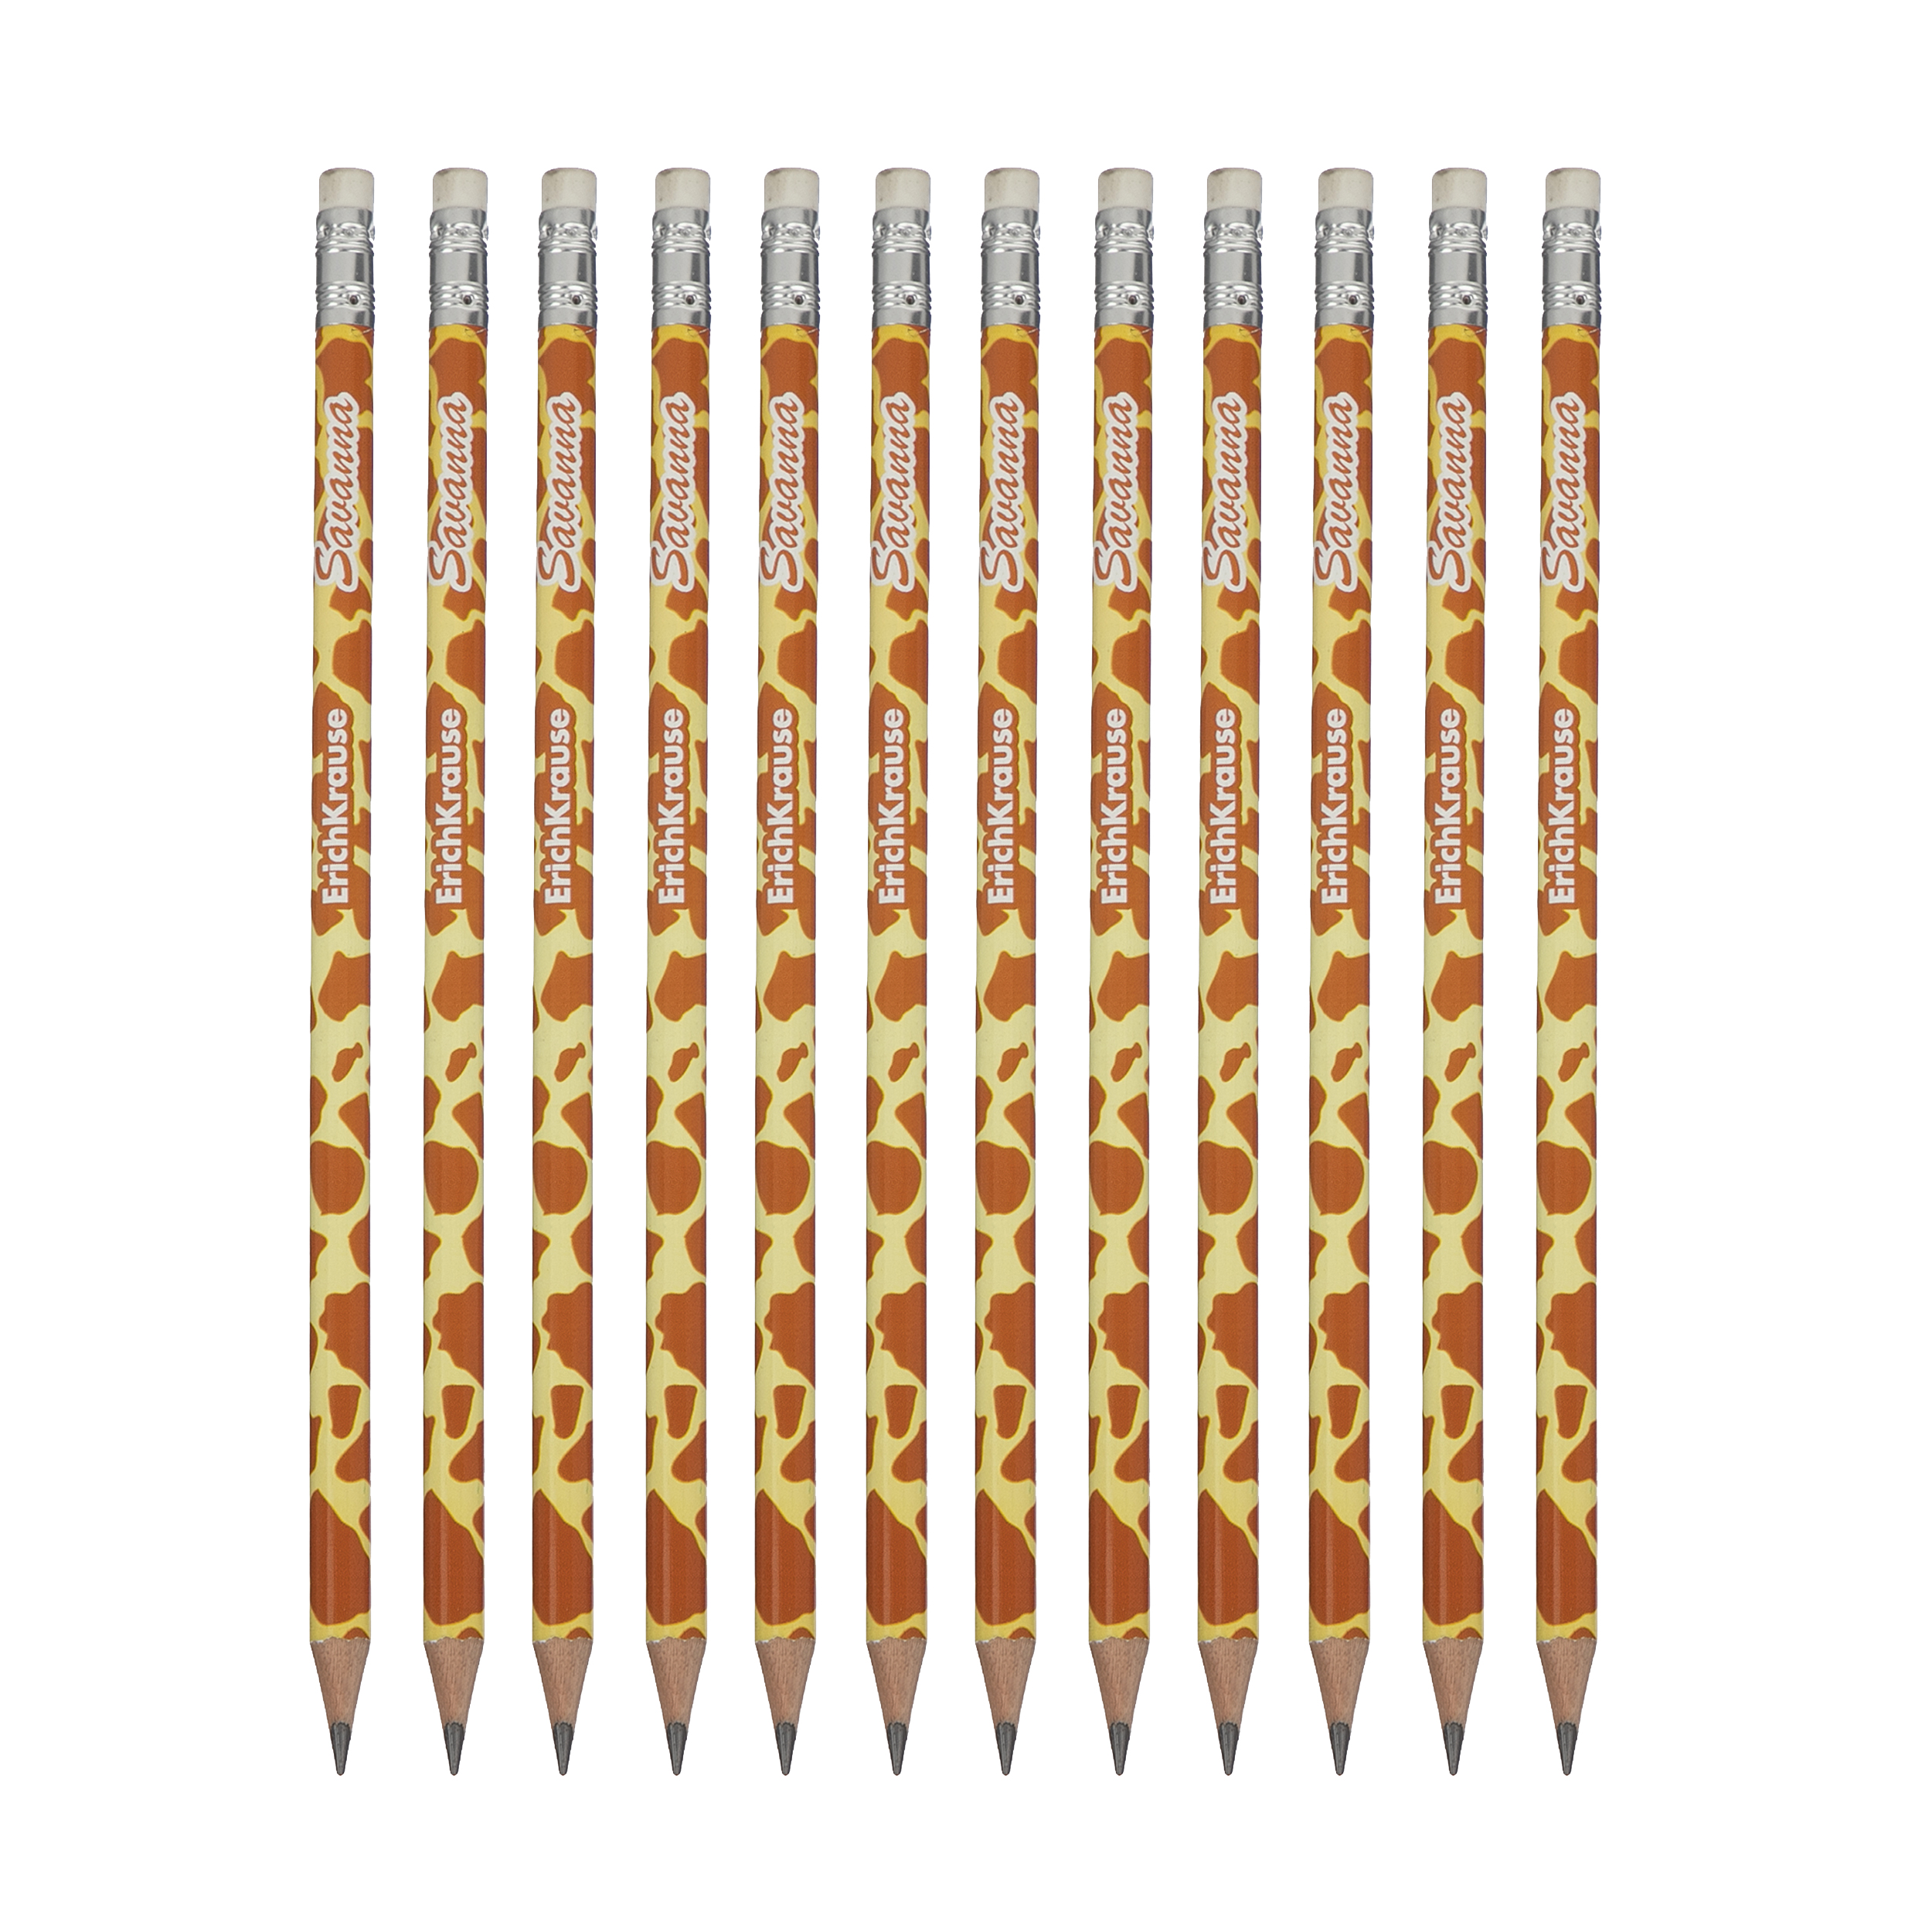 مداد مشکی اریک کراوزه مدل savanna کد 32863 بسته 12 عددی